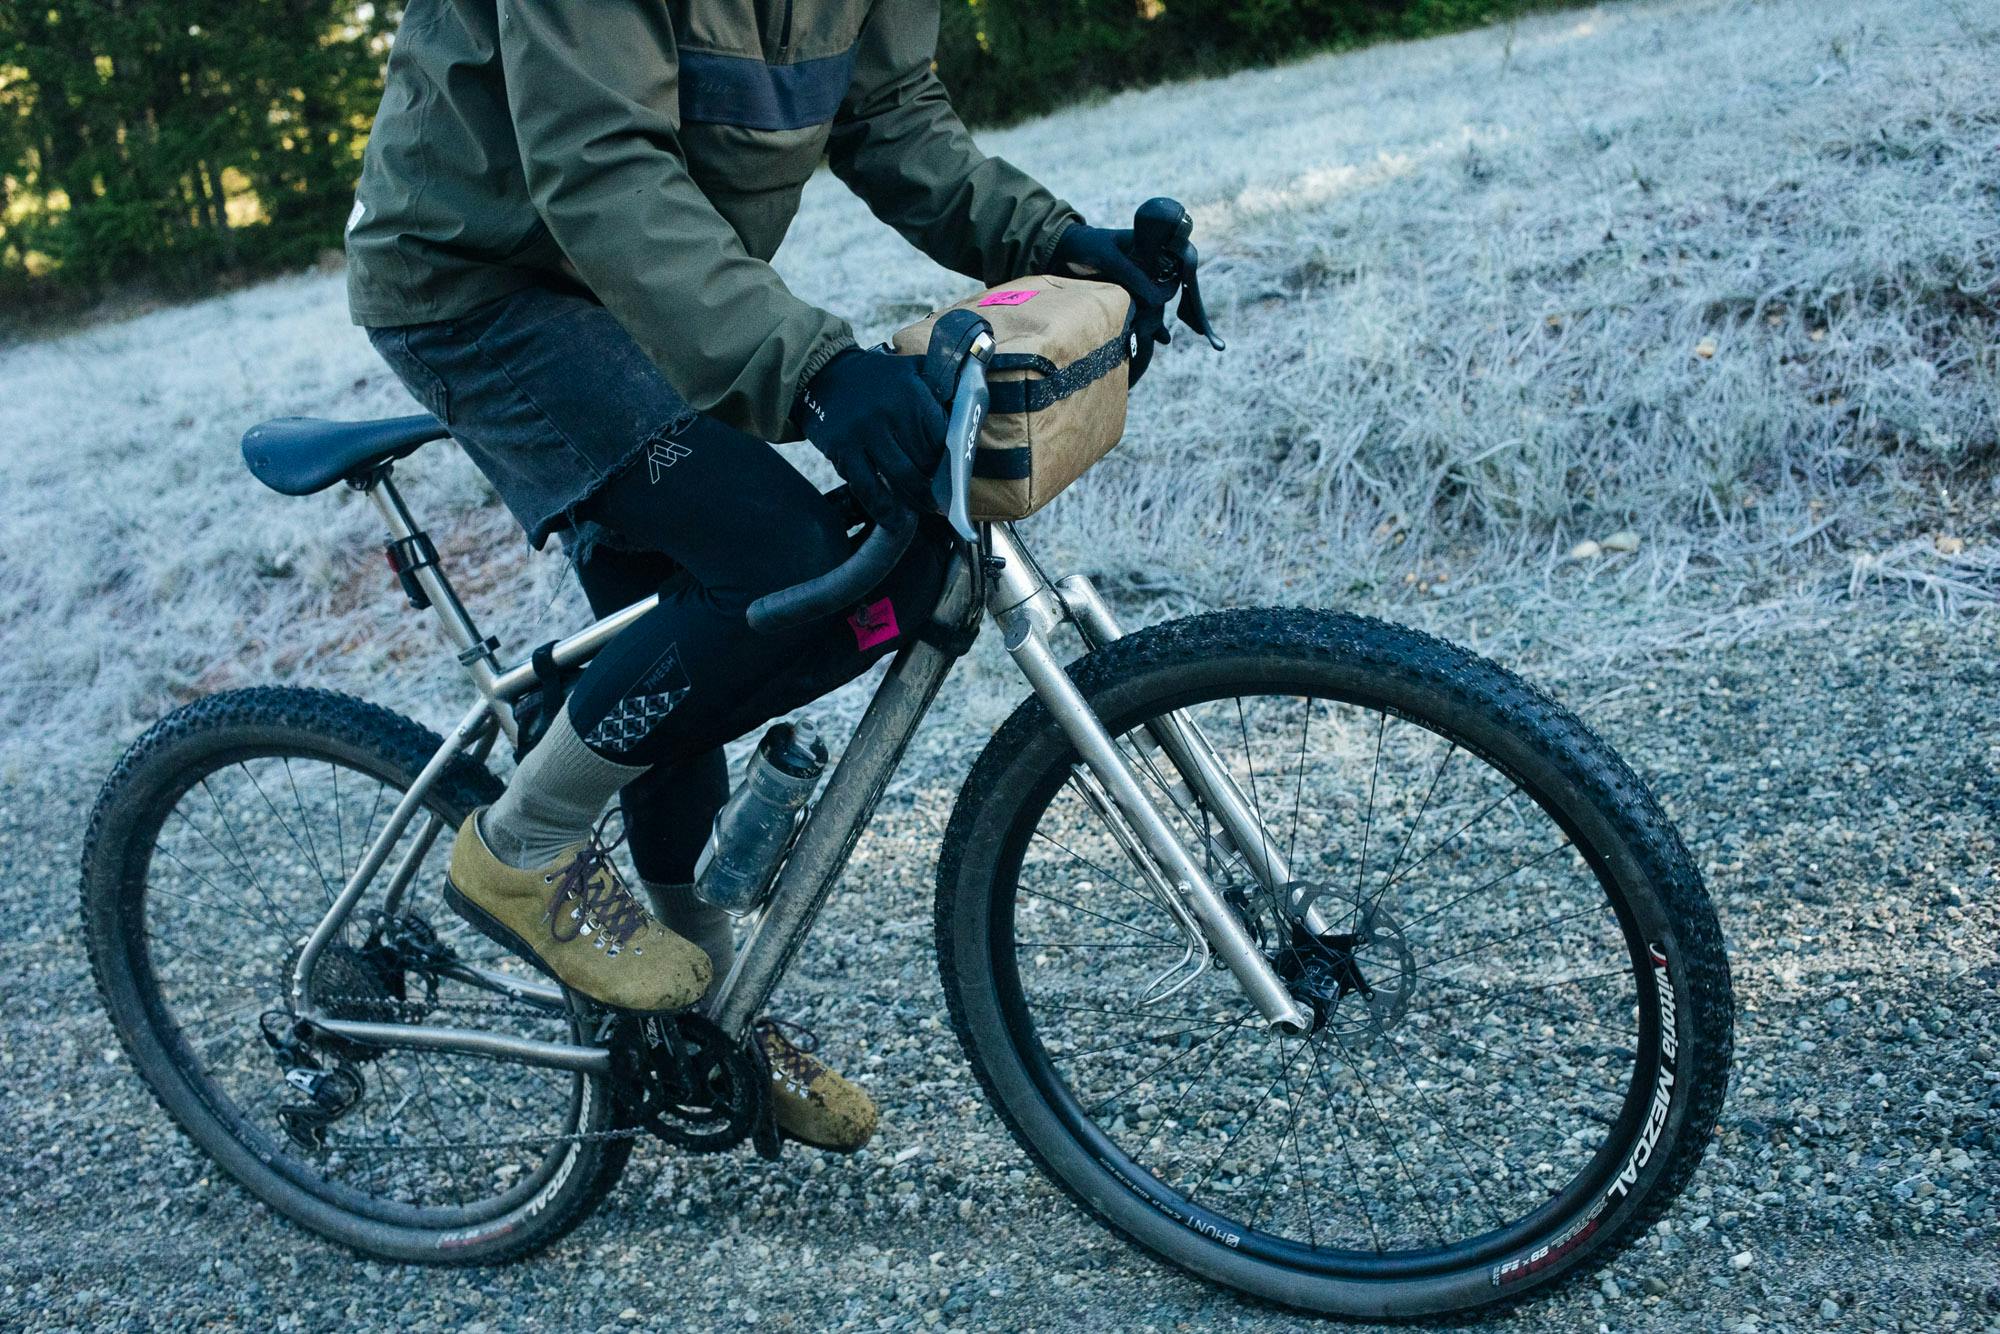 An action shot of Tom riding his Singular bike.